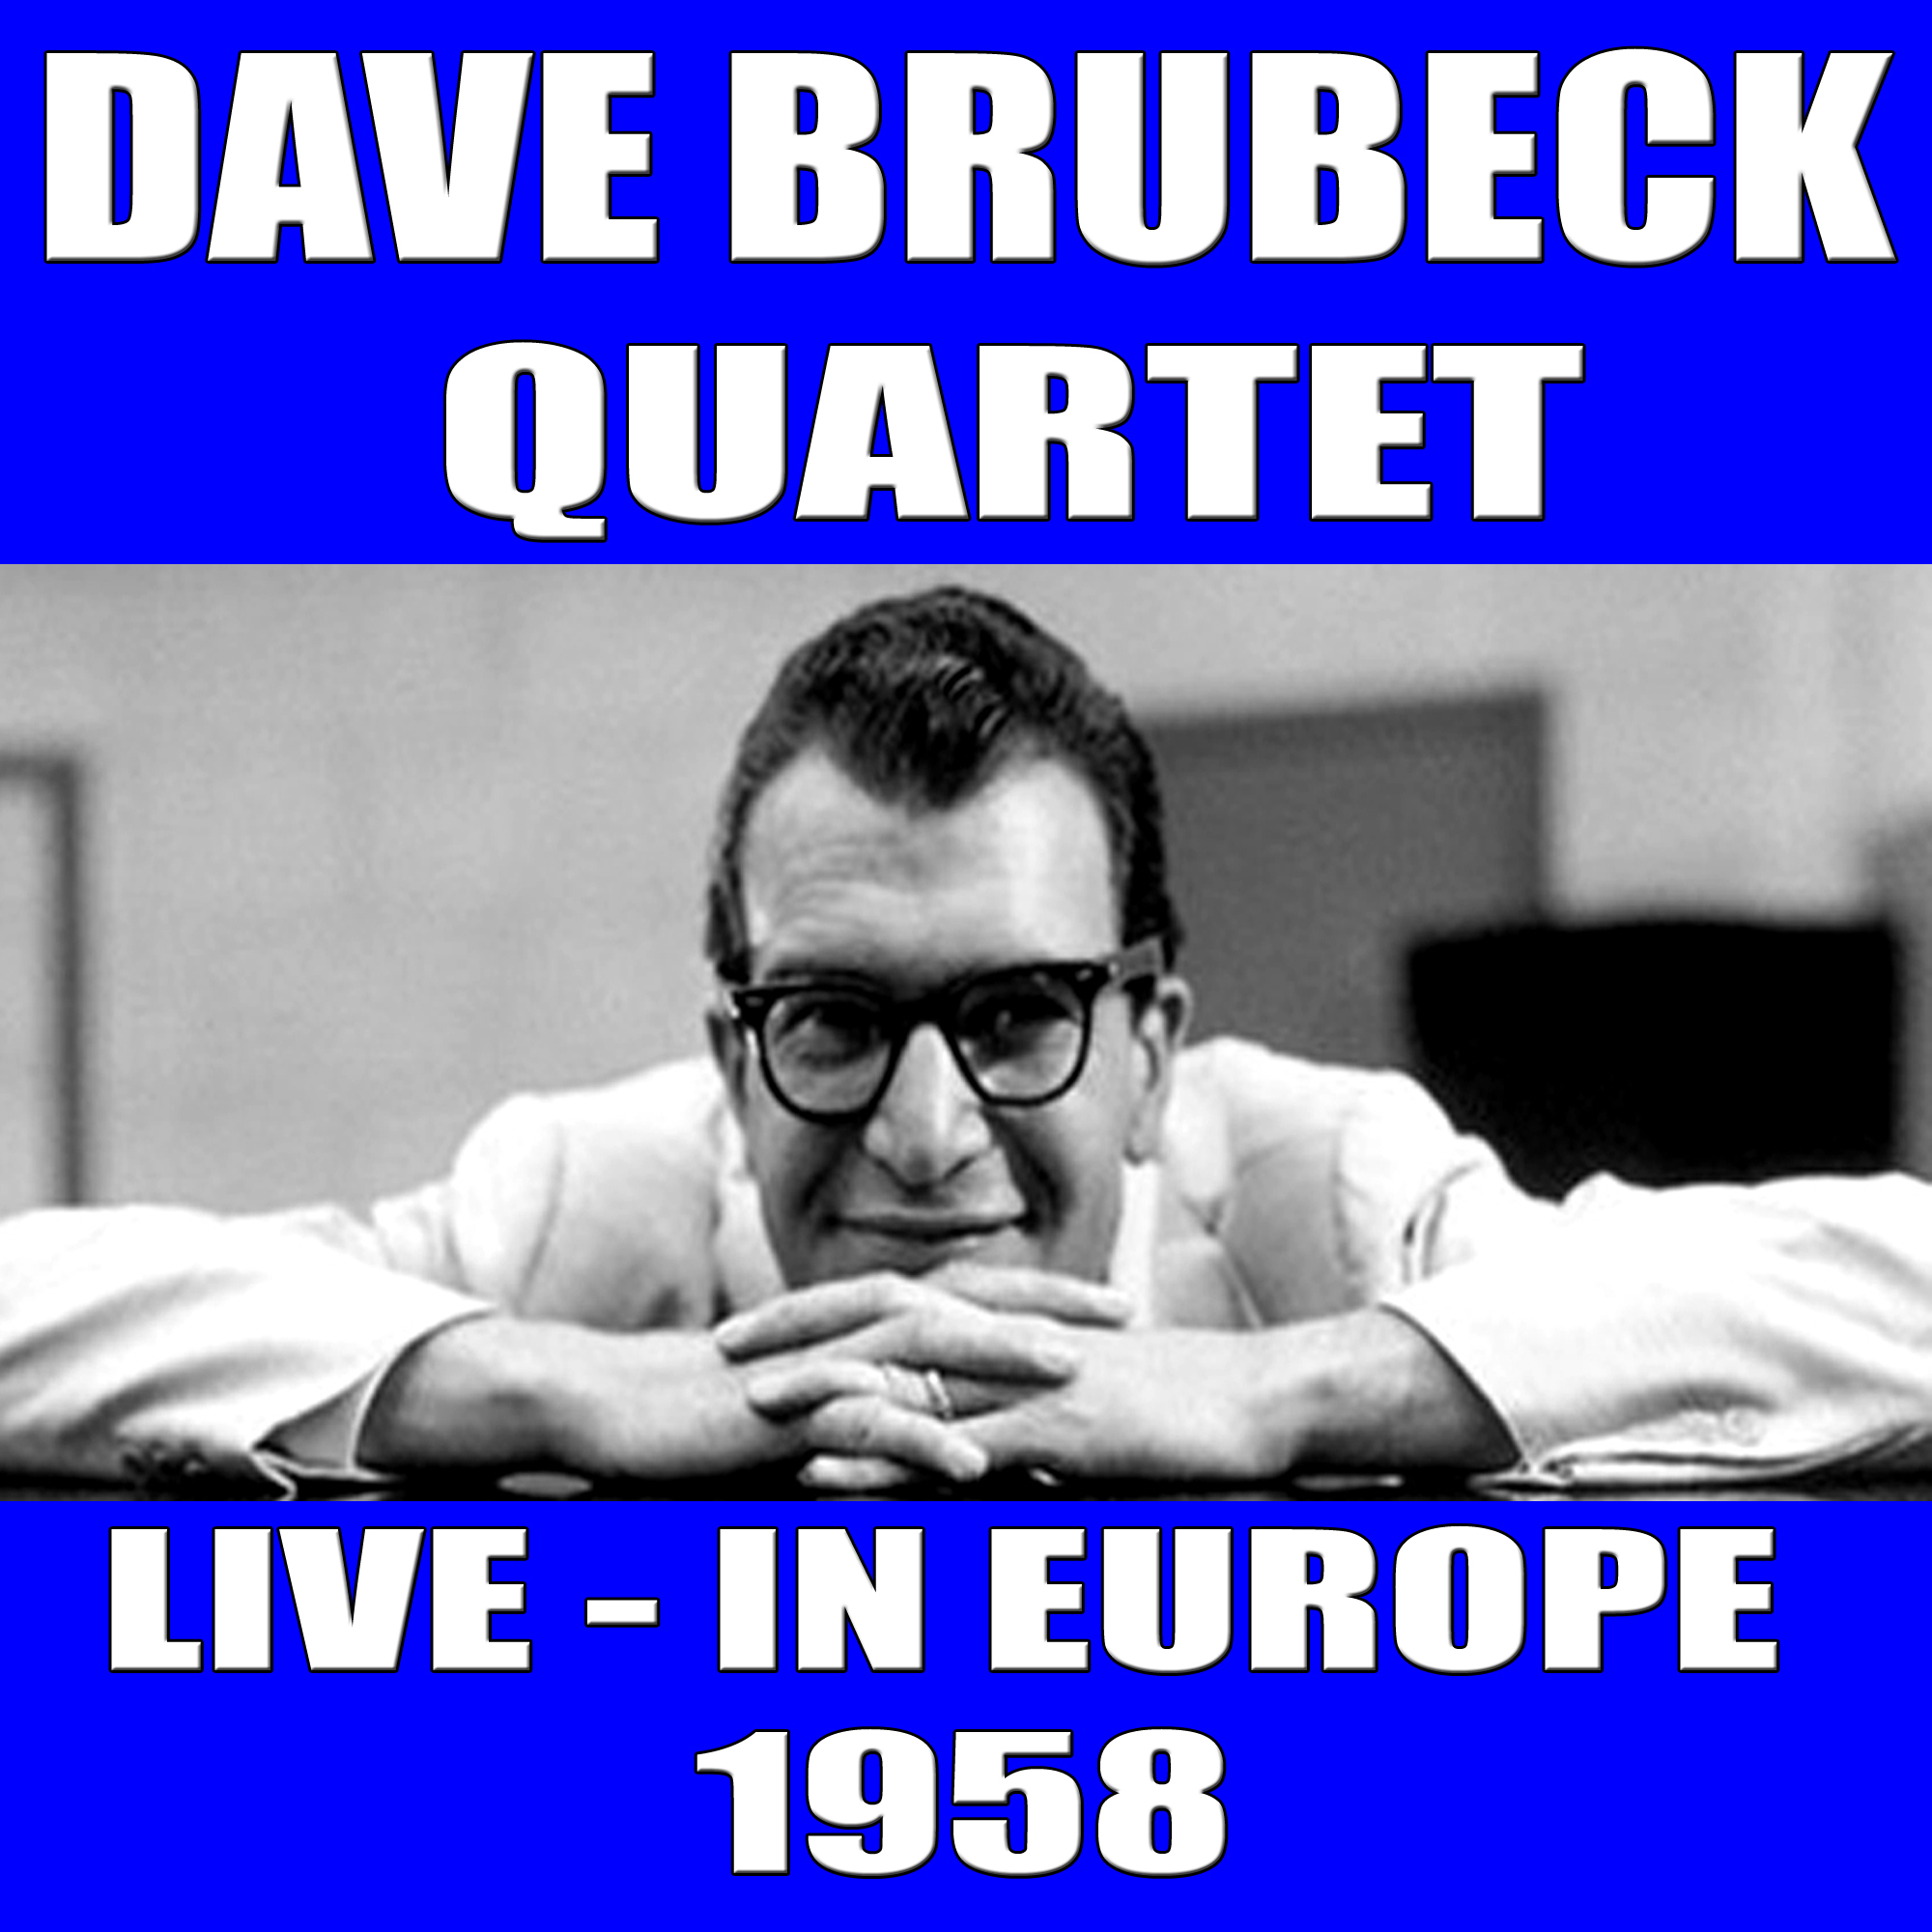 Dave Brubeck Quartet:Live in Europe 1958